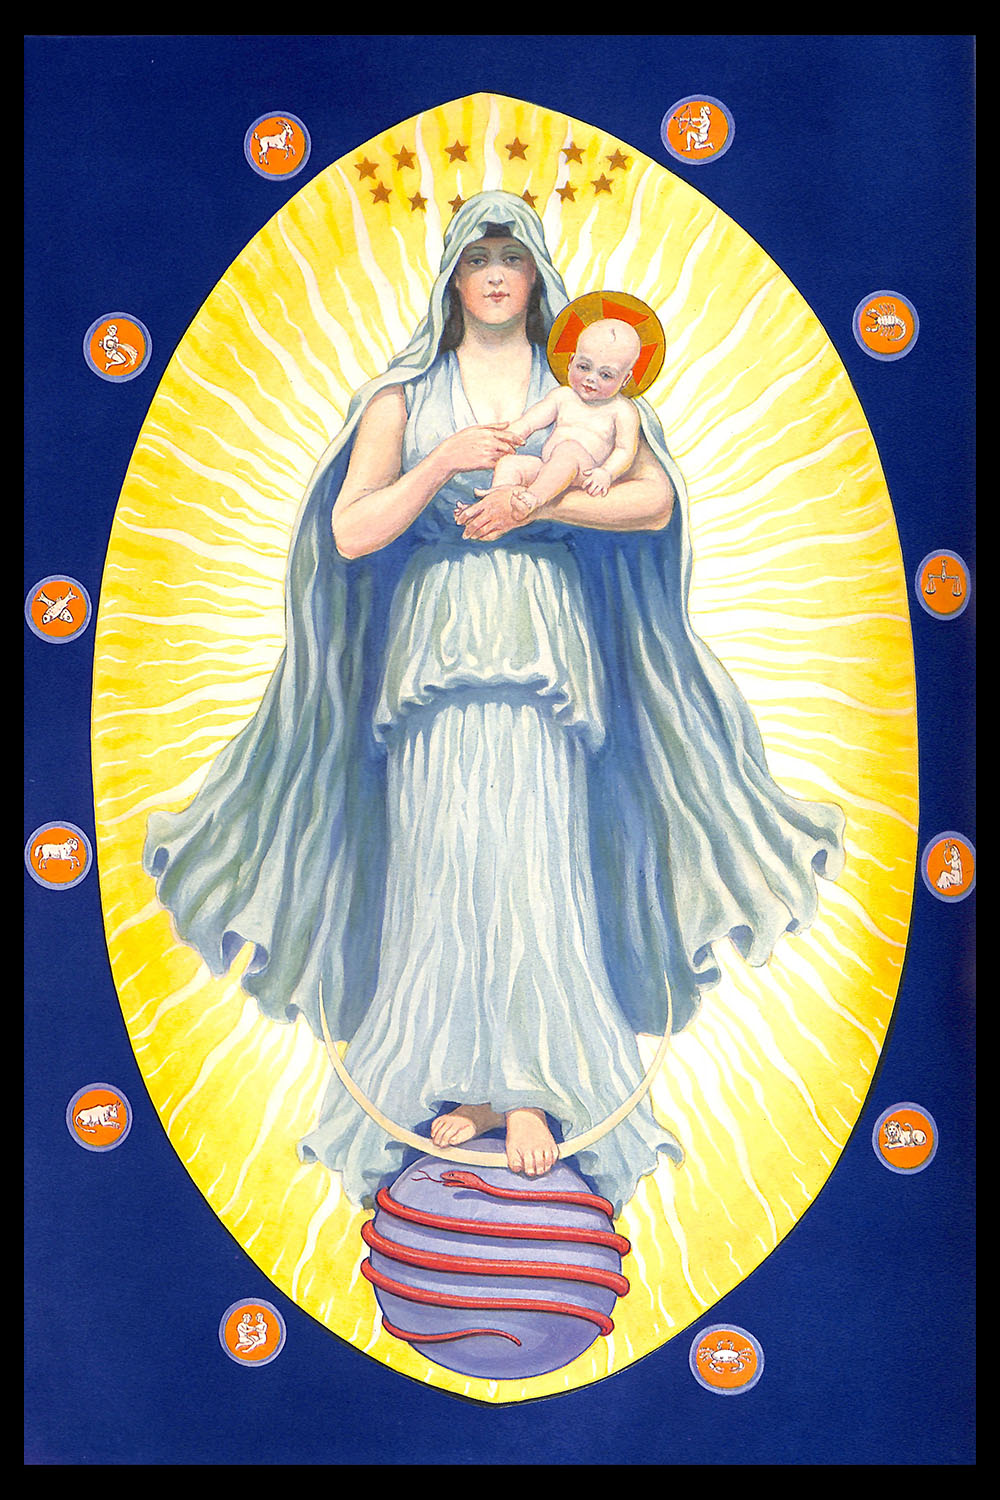 PLATE 9: The Celestial Virgin